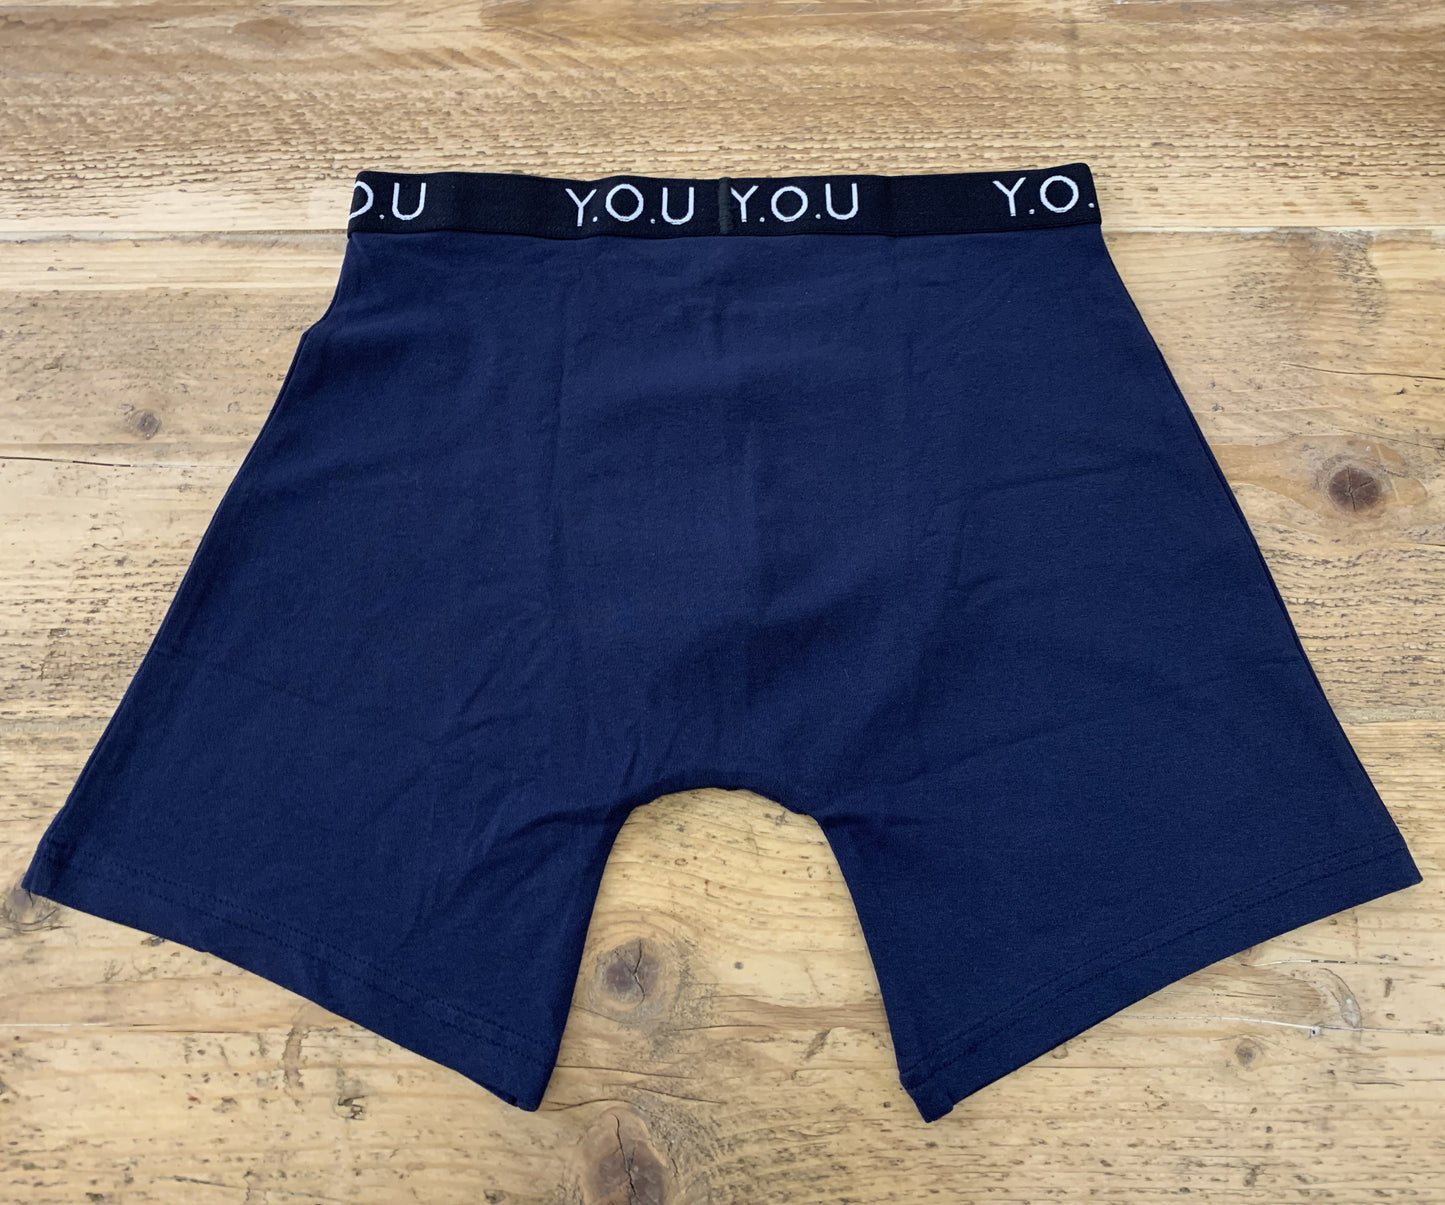 Men's organic cotton longer-leg trunks in navy blue